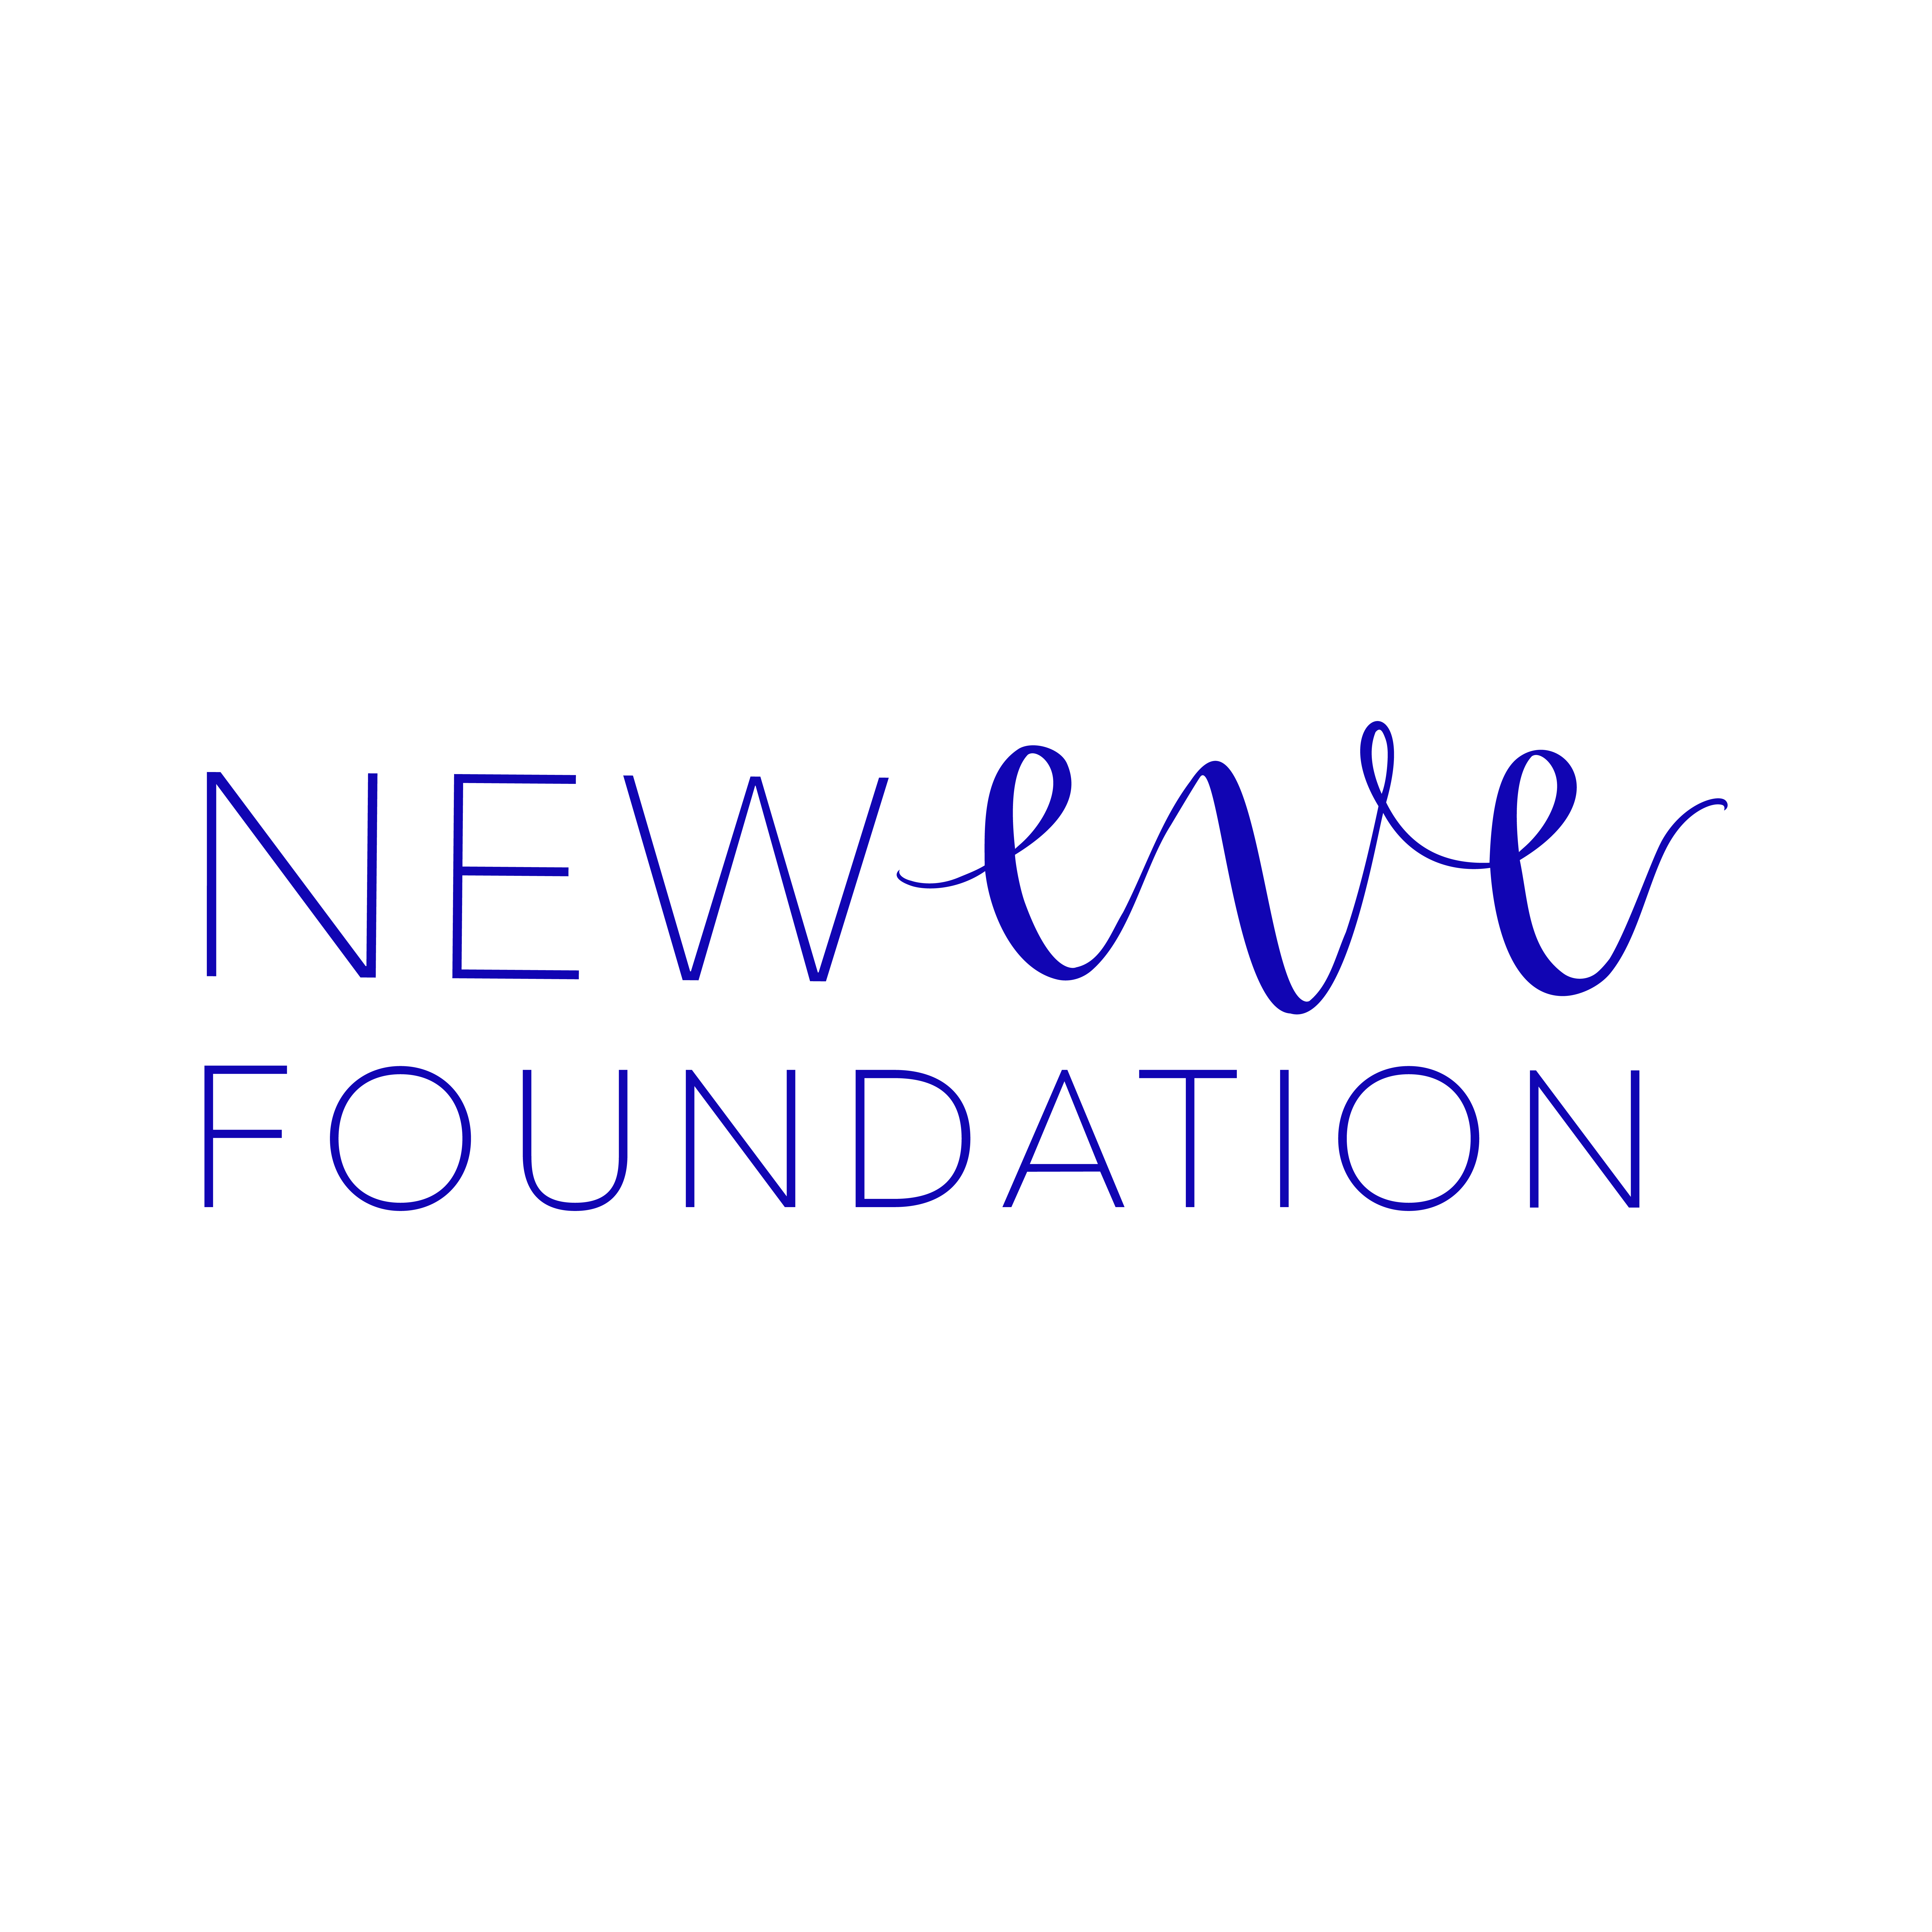 New Eve Foundation logo